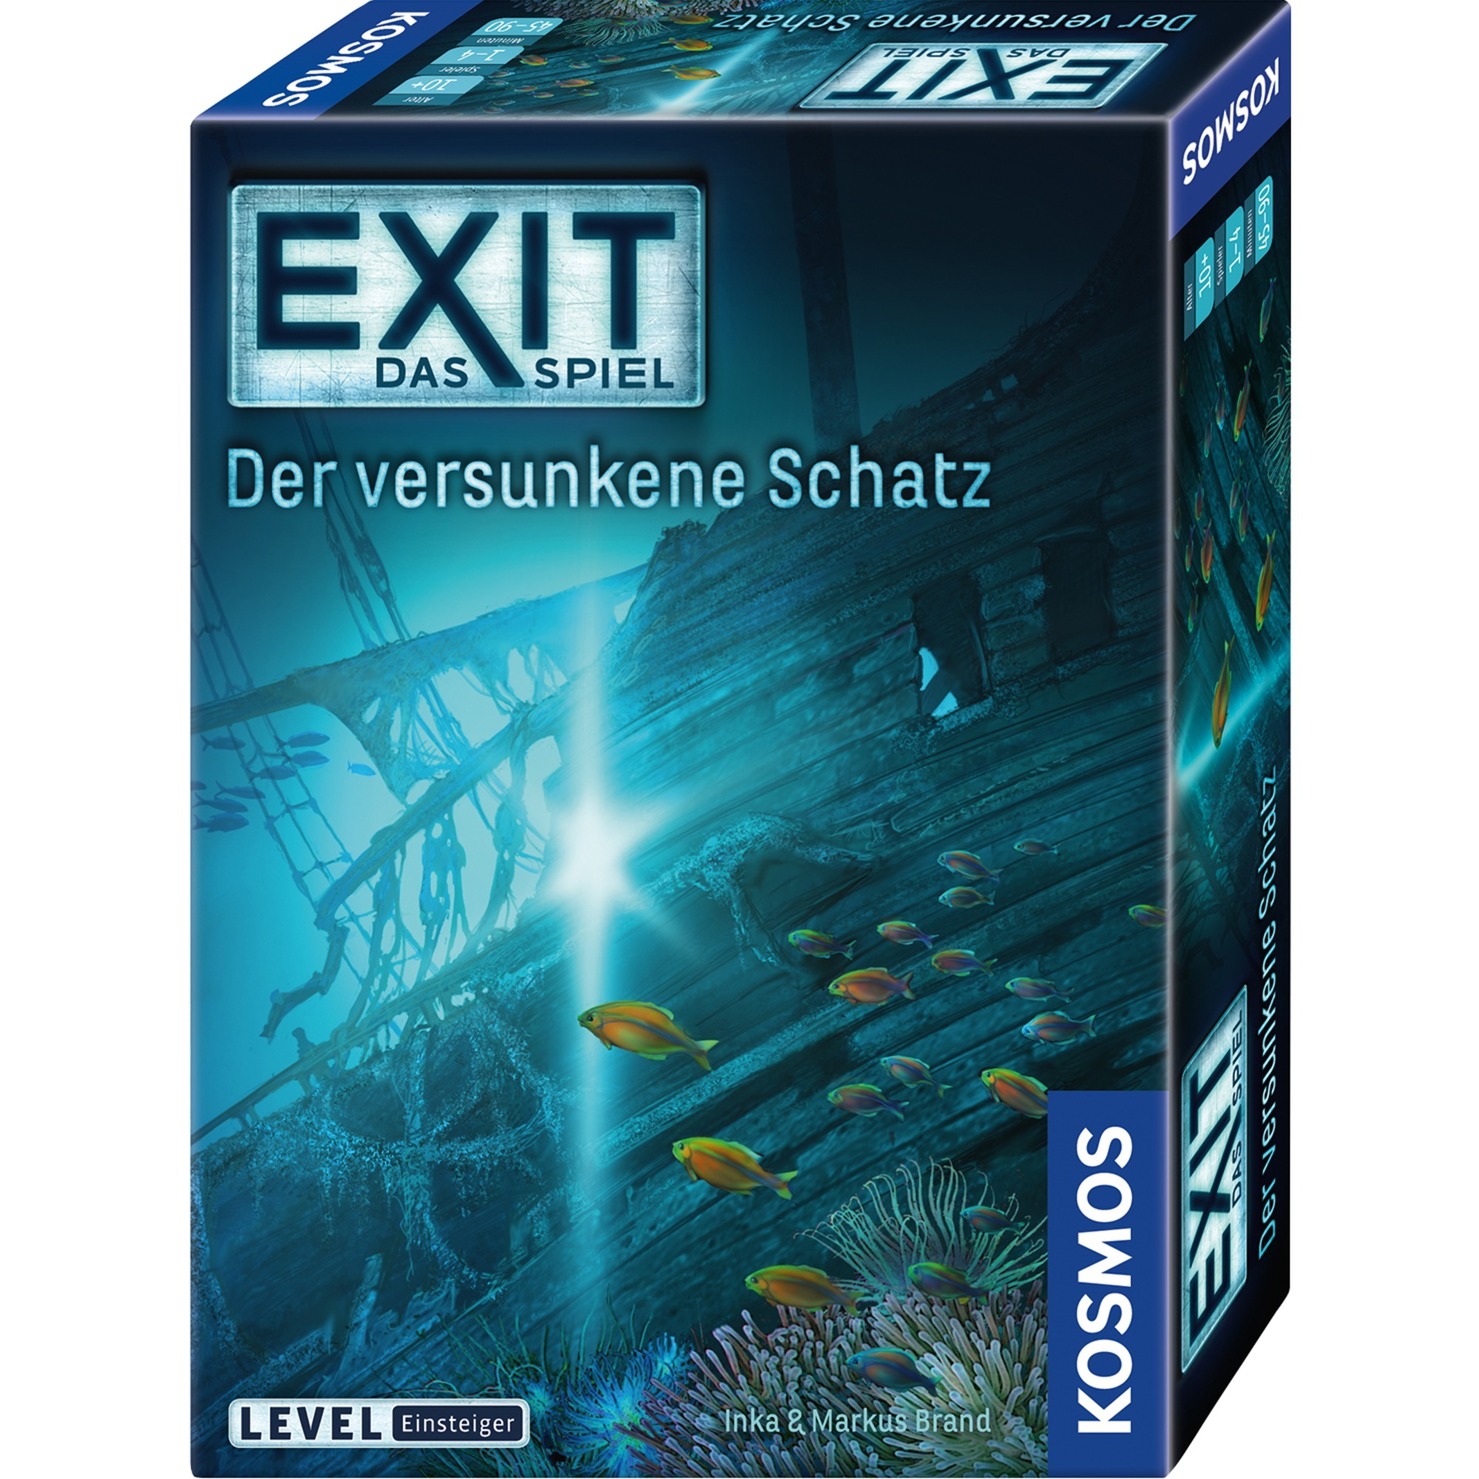 Image of Alternate - EXIT - Das Spiel - Der versunkene Schatz, Partyspiel online einkaufen bei Alternate